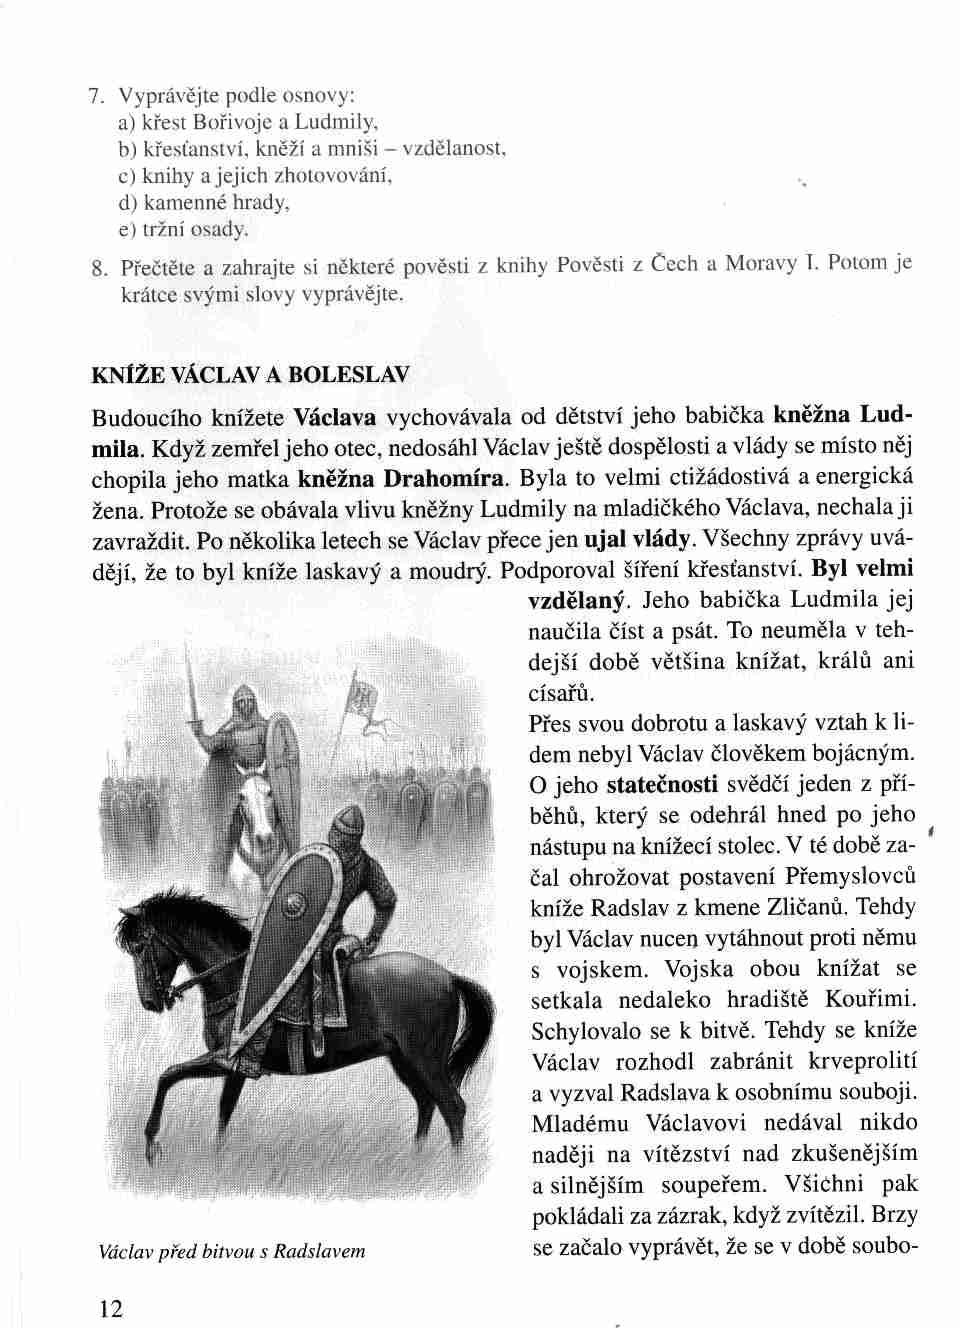 Kníže Václav a Boleslav.jpg